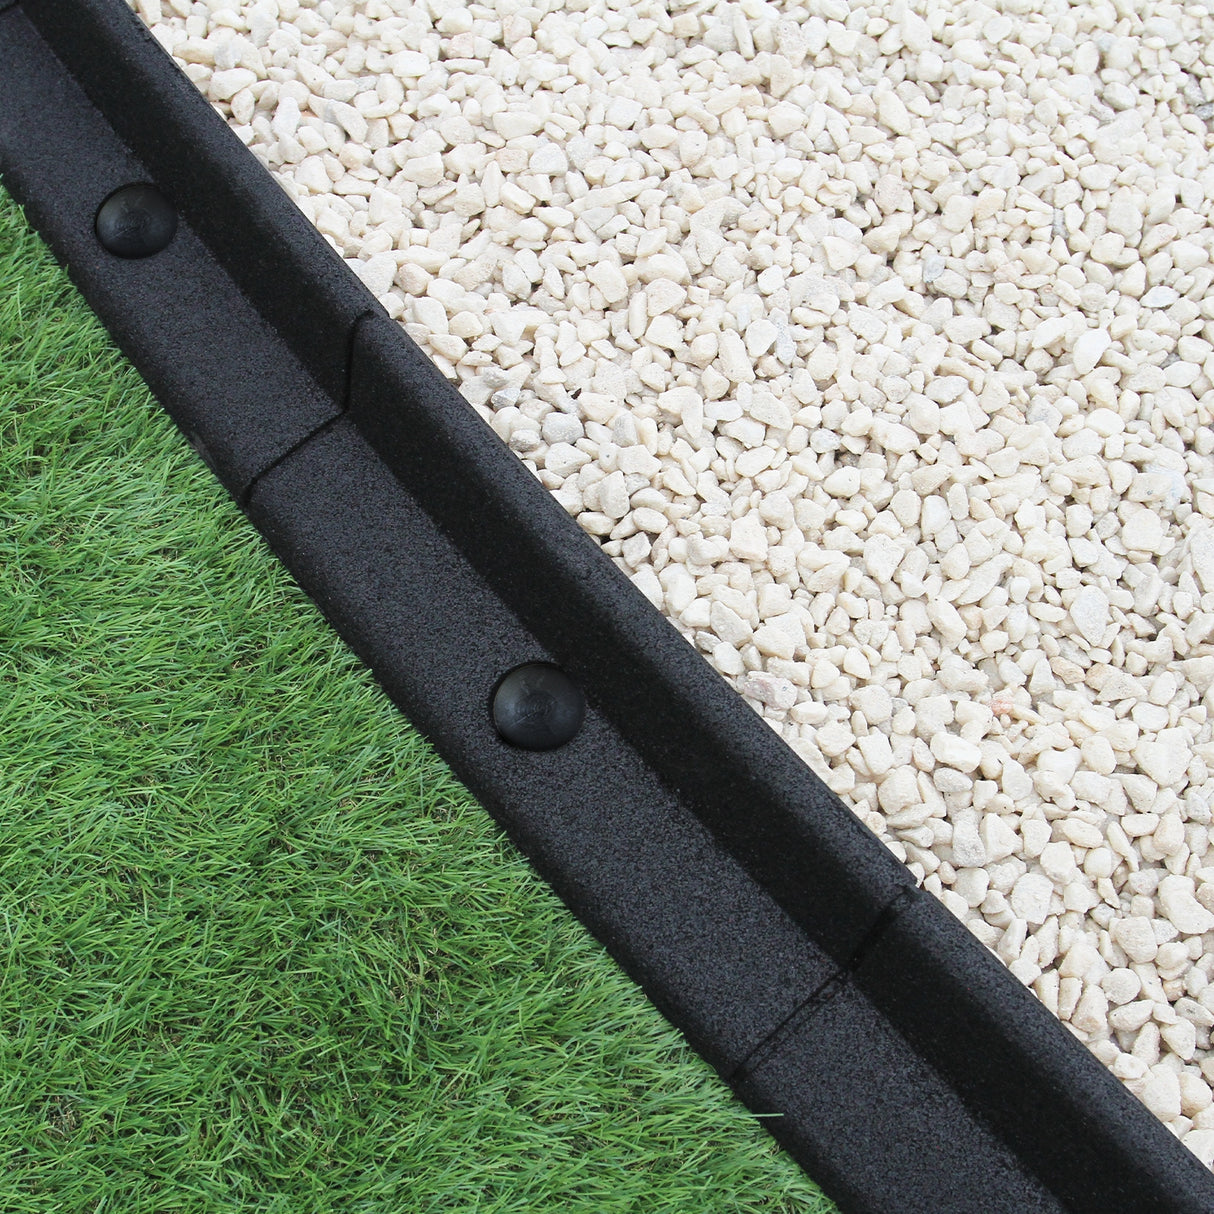 Flexible Lawn Edging Black 1.2m x 24